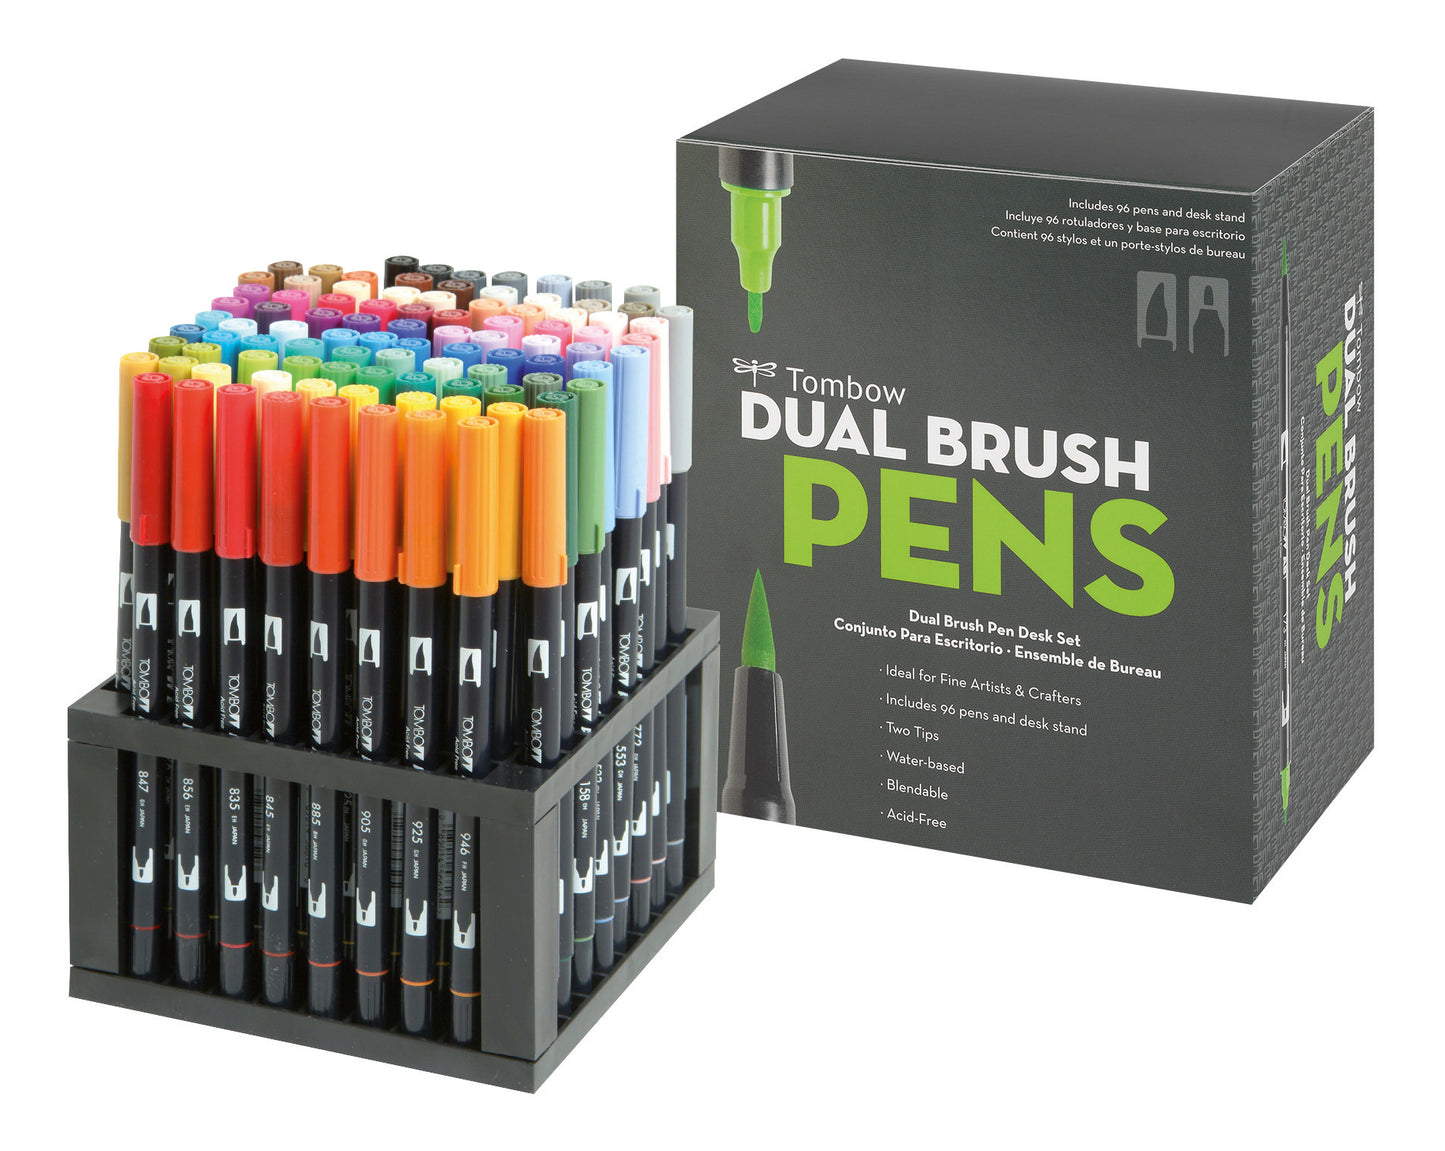 Tombow Dual Brush Pens bordsställ med 96 pennor